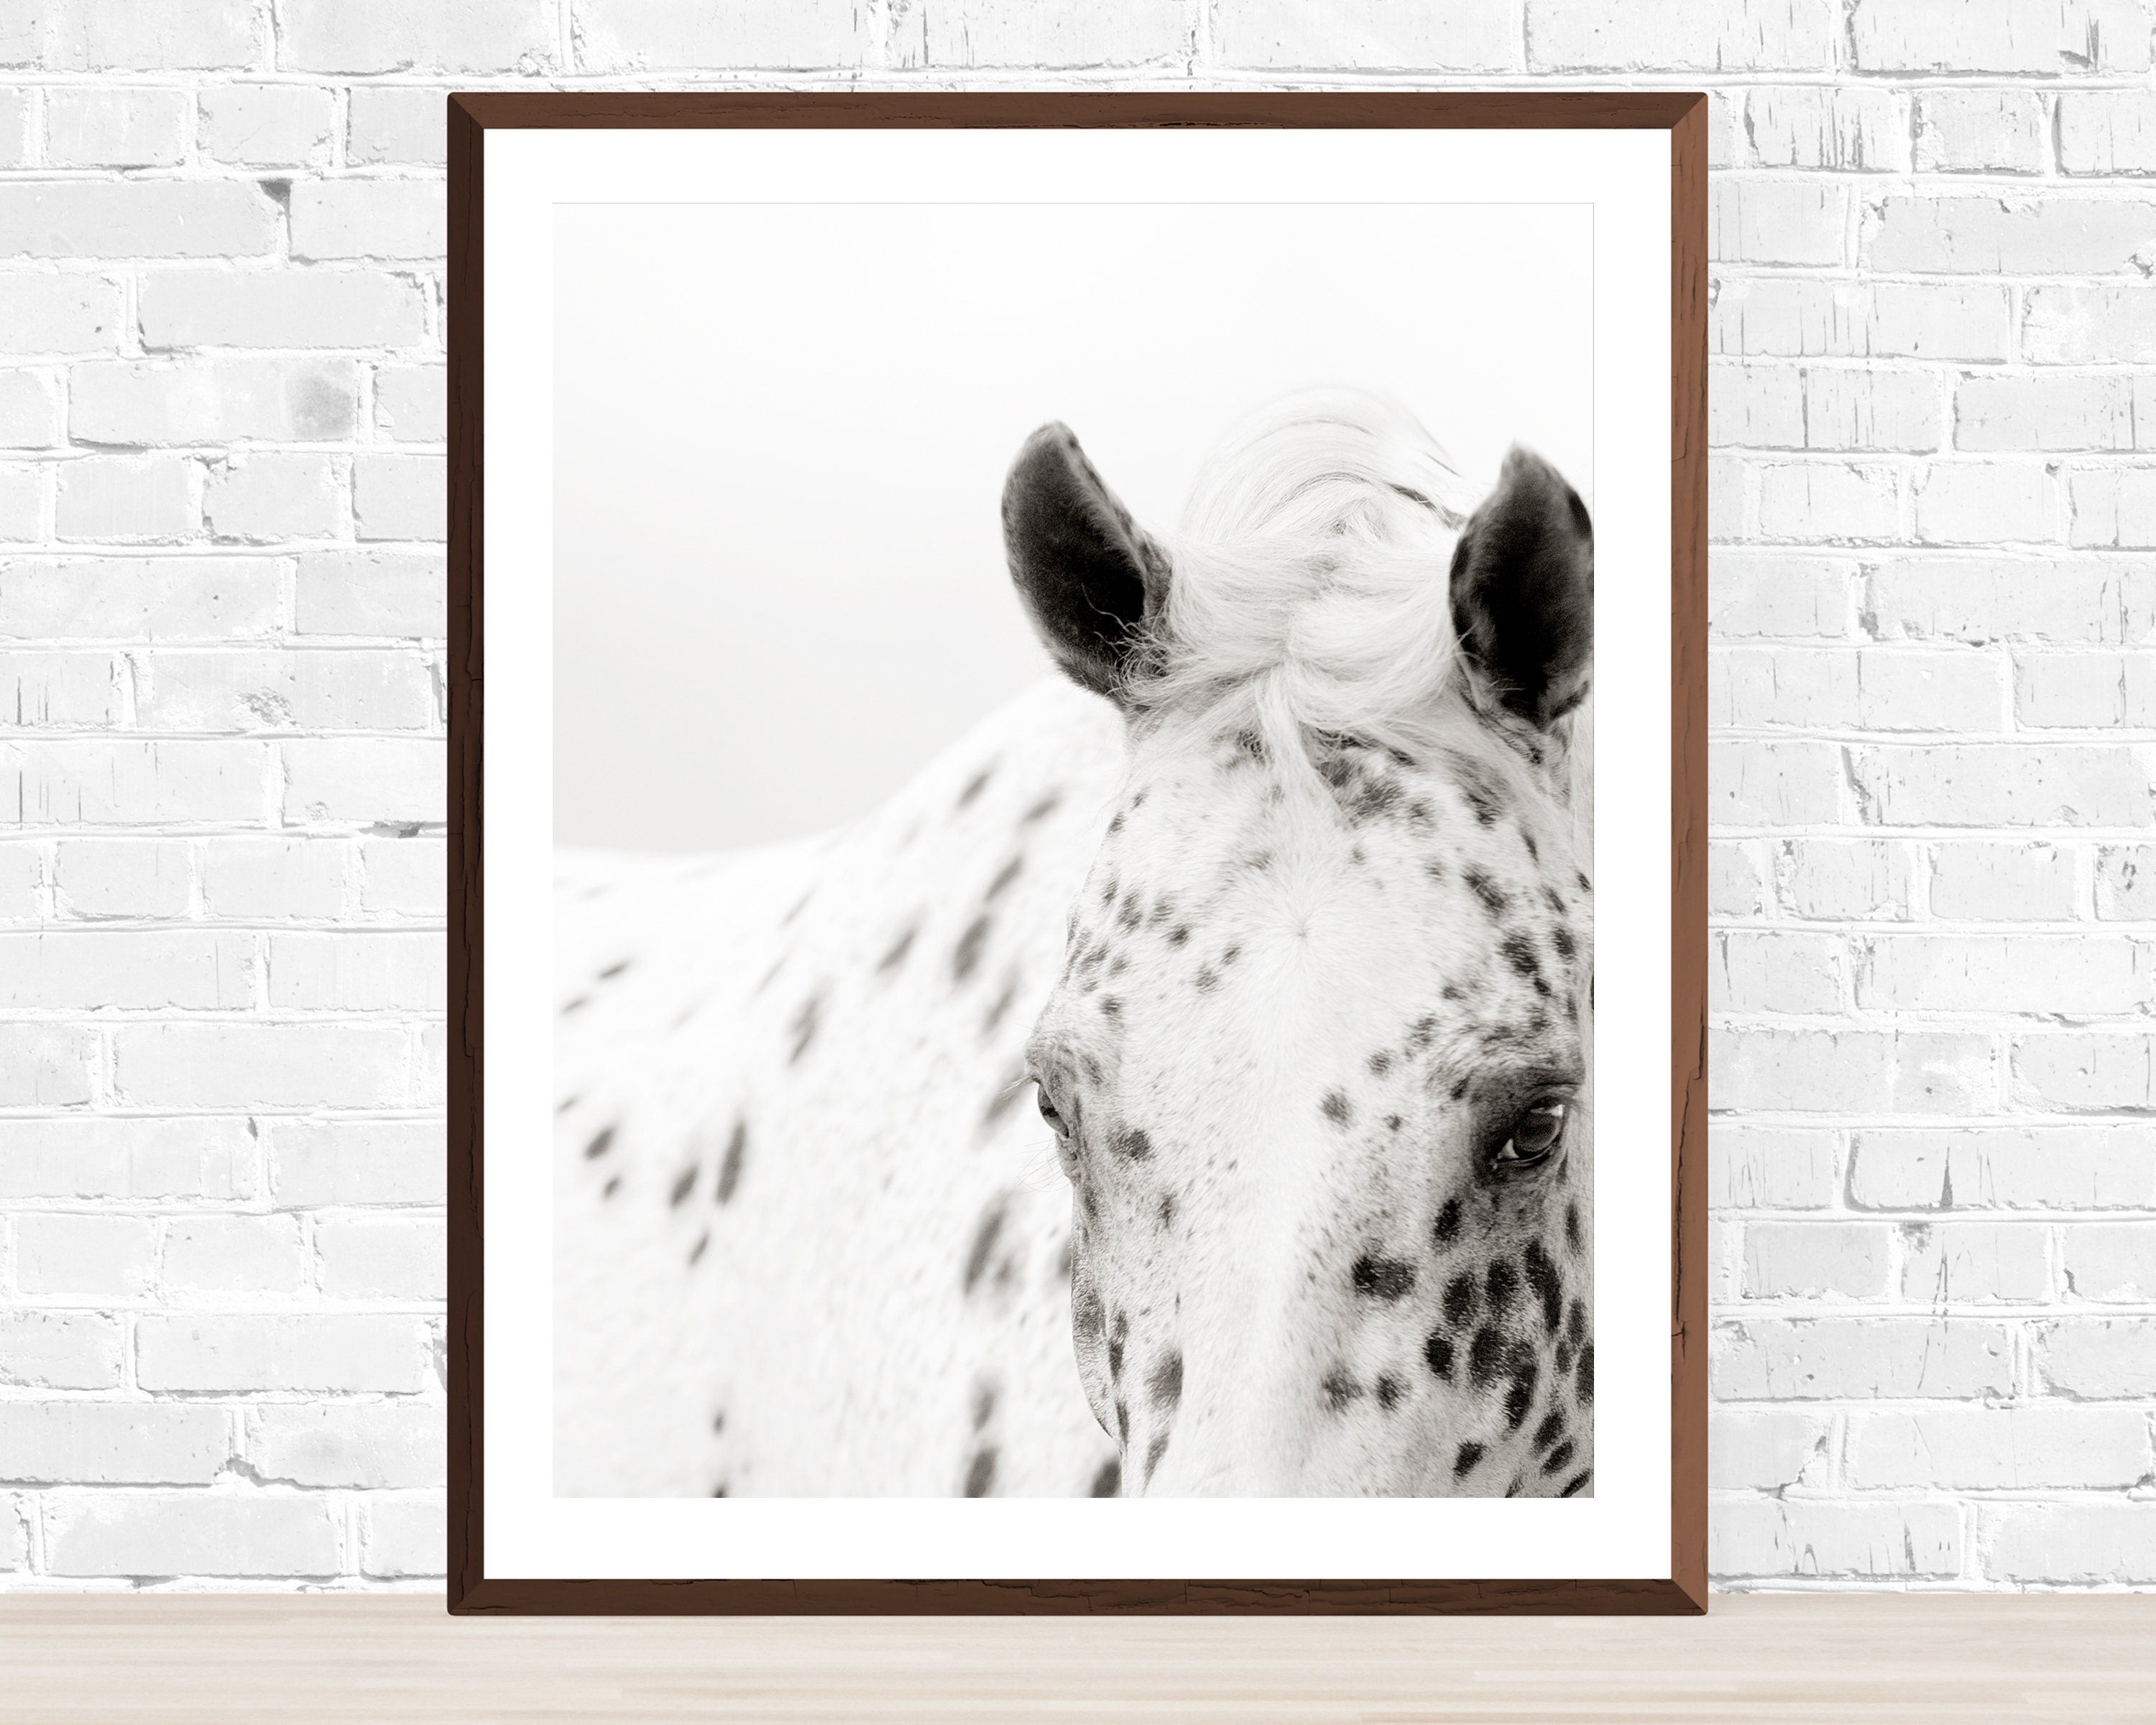 Grand imprimé encadrée-Belle étalon blanc photo poster cheval animal art